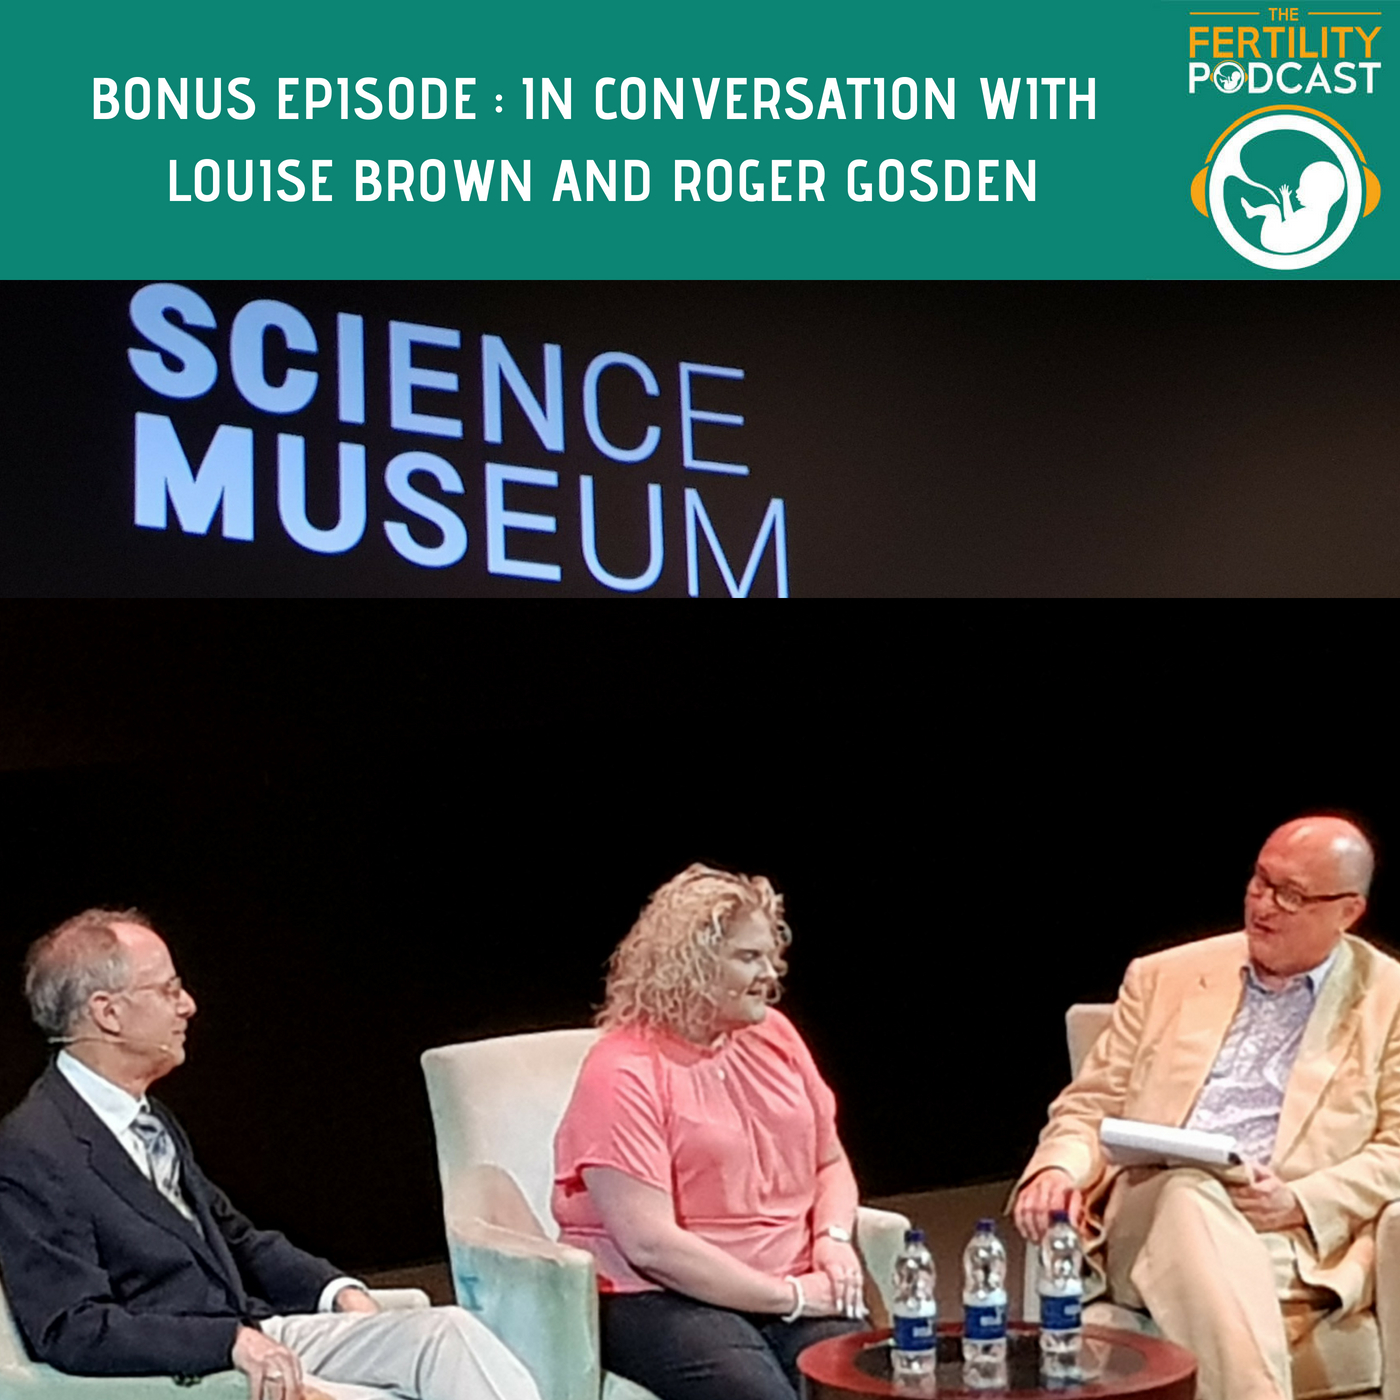 BONUS EPISODE : IVF IN CONVERSATION AT THE BRITISH SCIENCE MUSEUM